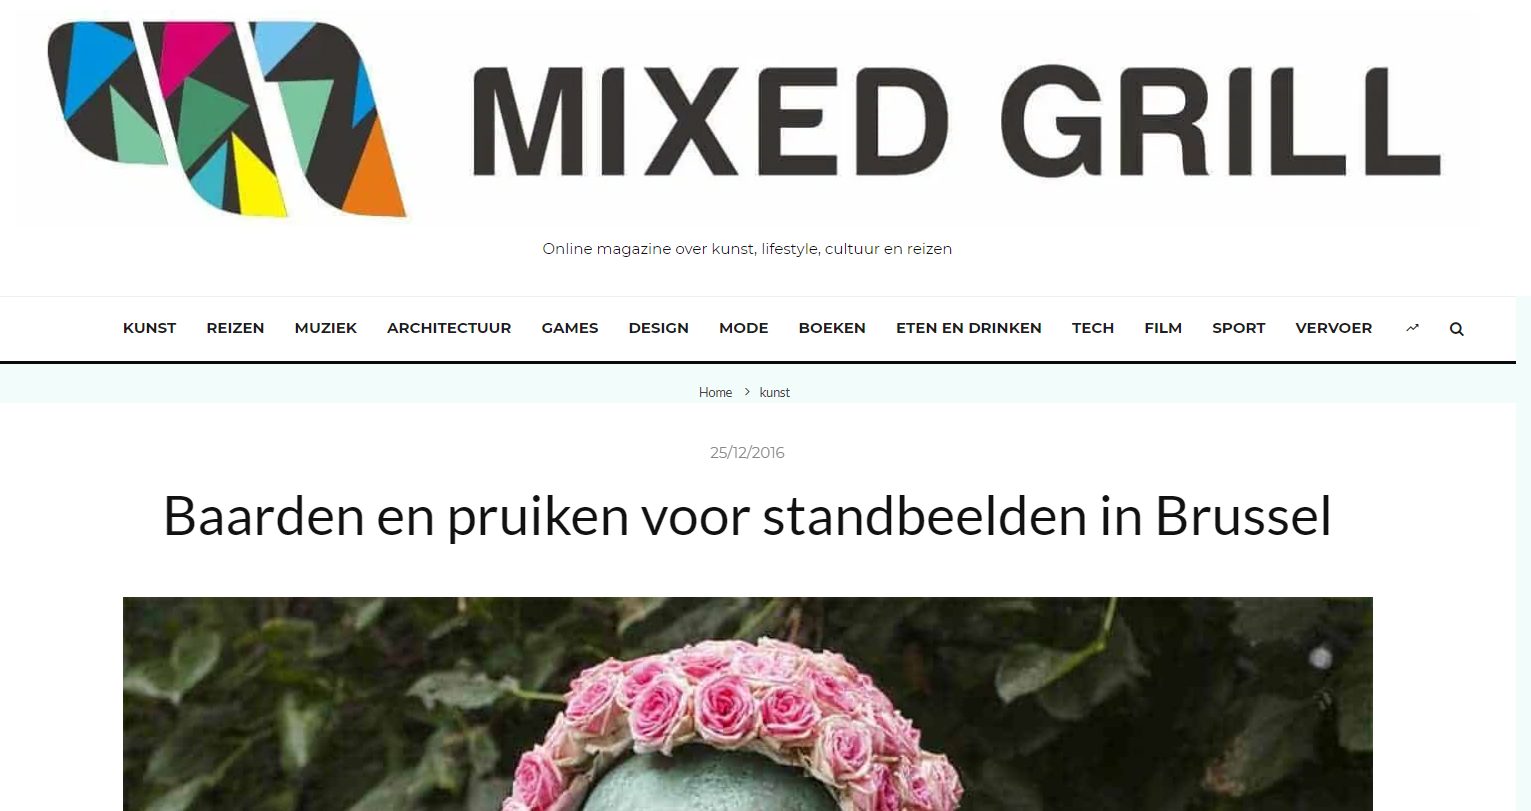 mixedgrill.nl baarden pruiken bloemen brussel